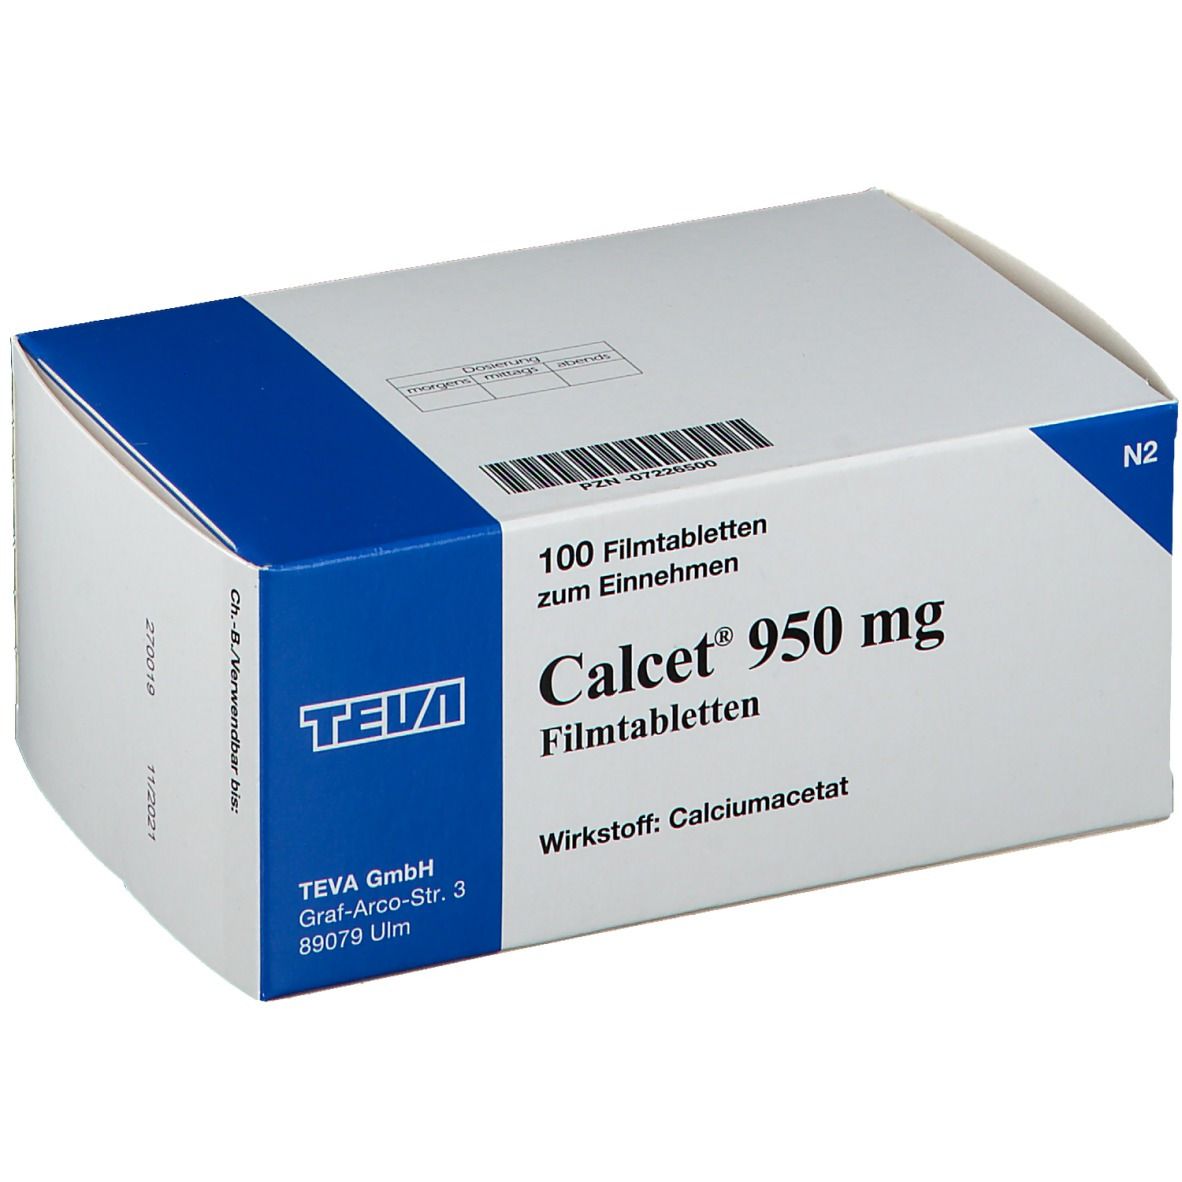 Calcet® 950 mg Filmtabletten